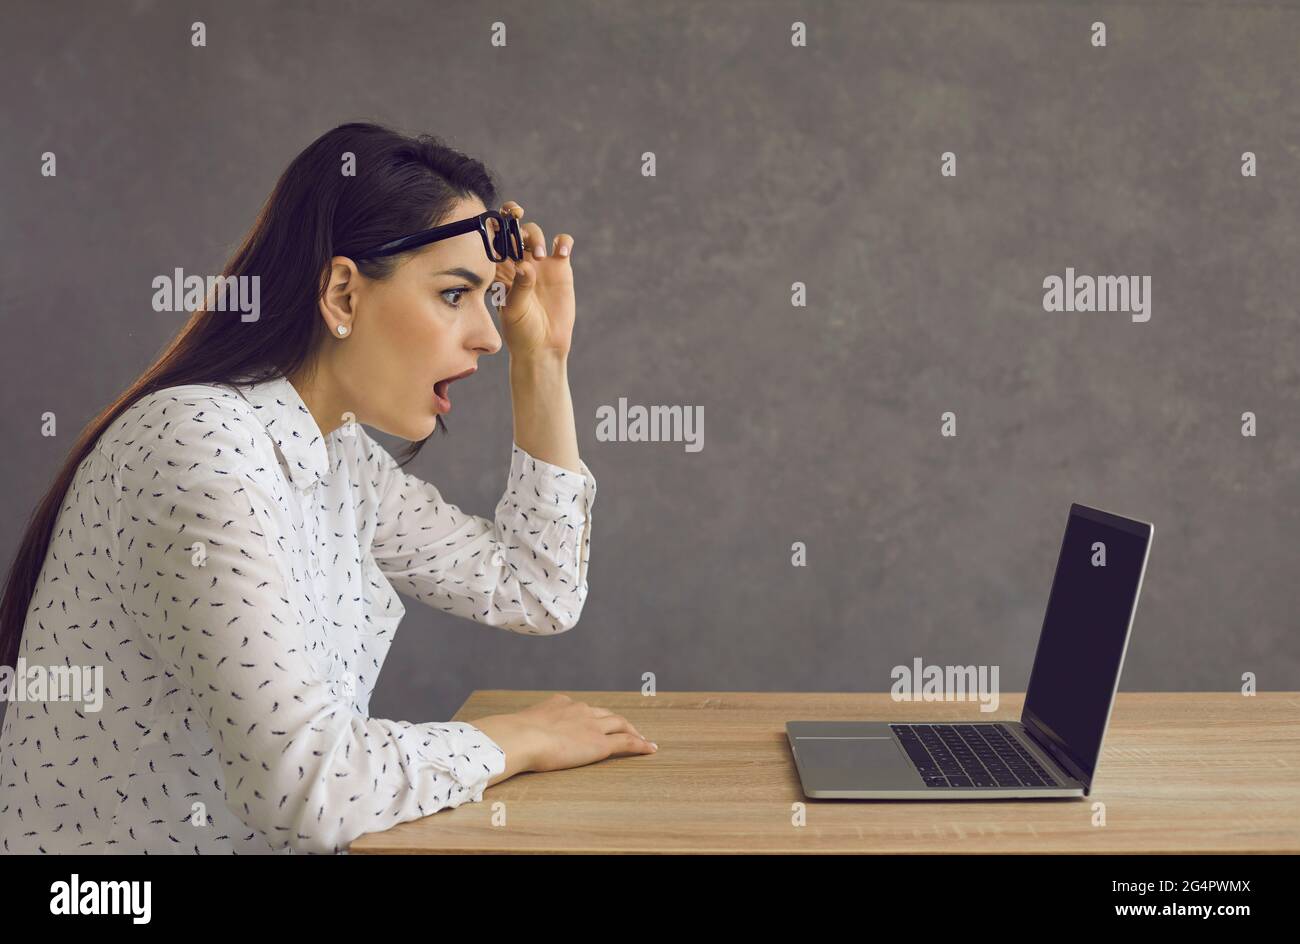 Vue latérale d'une jeune femme avec une expression choquée regardant un écran d'ordinateur portable. Banque D'Images